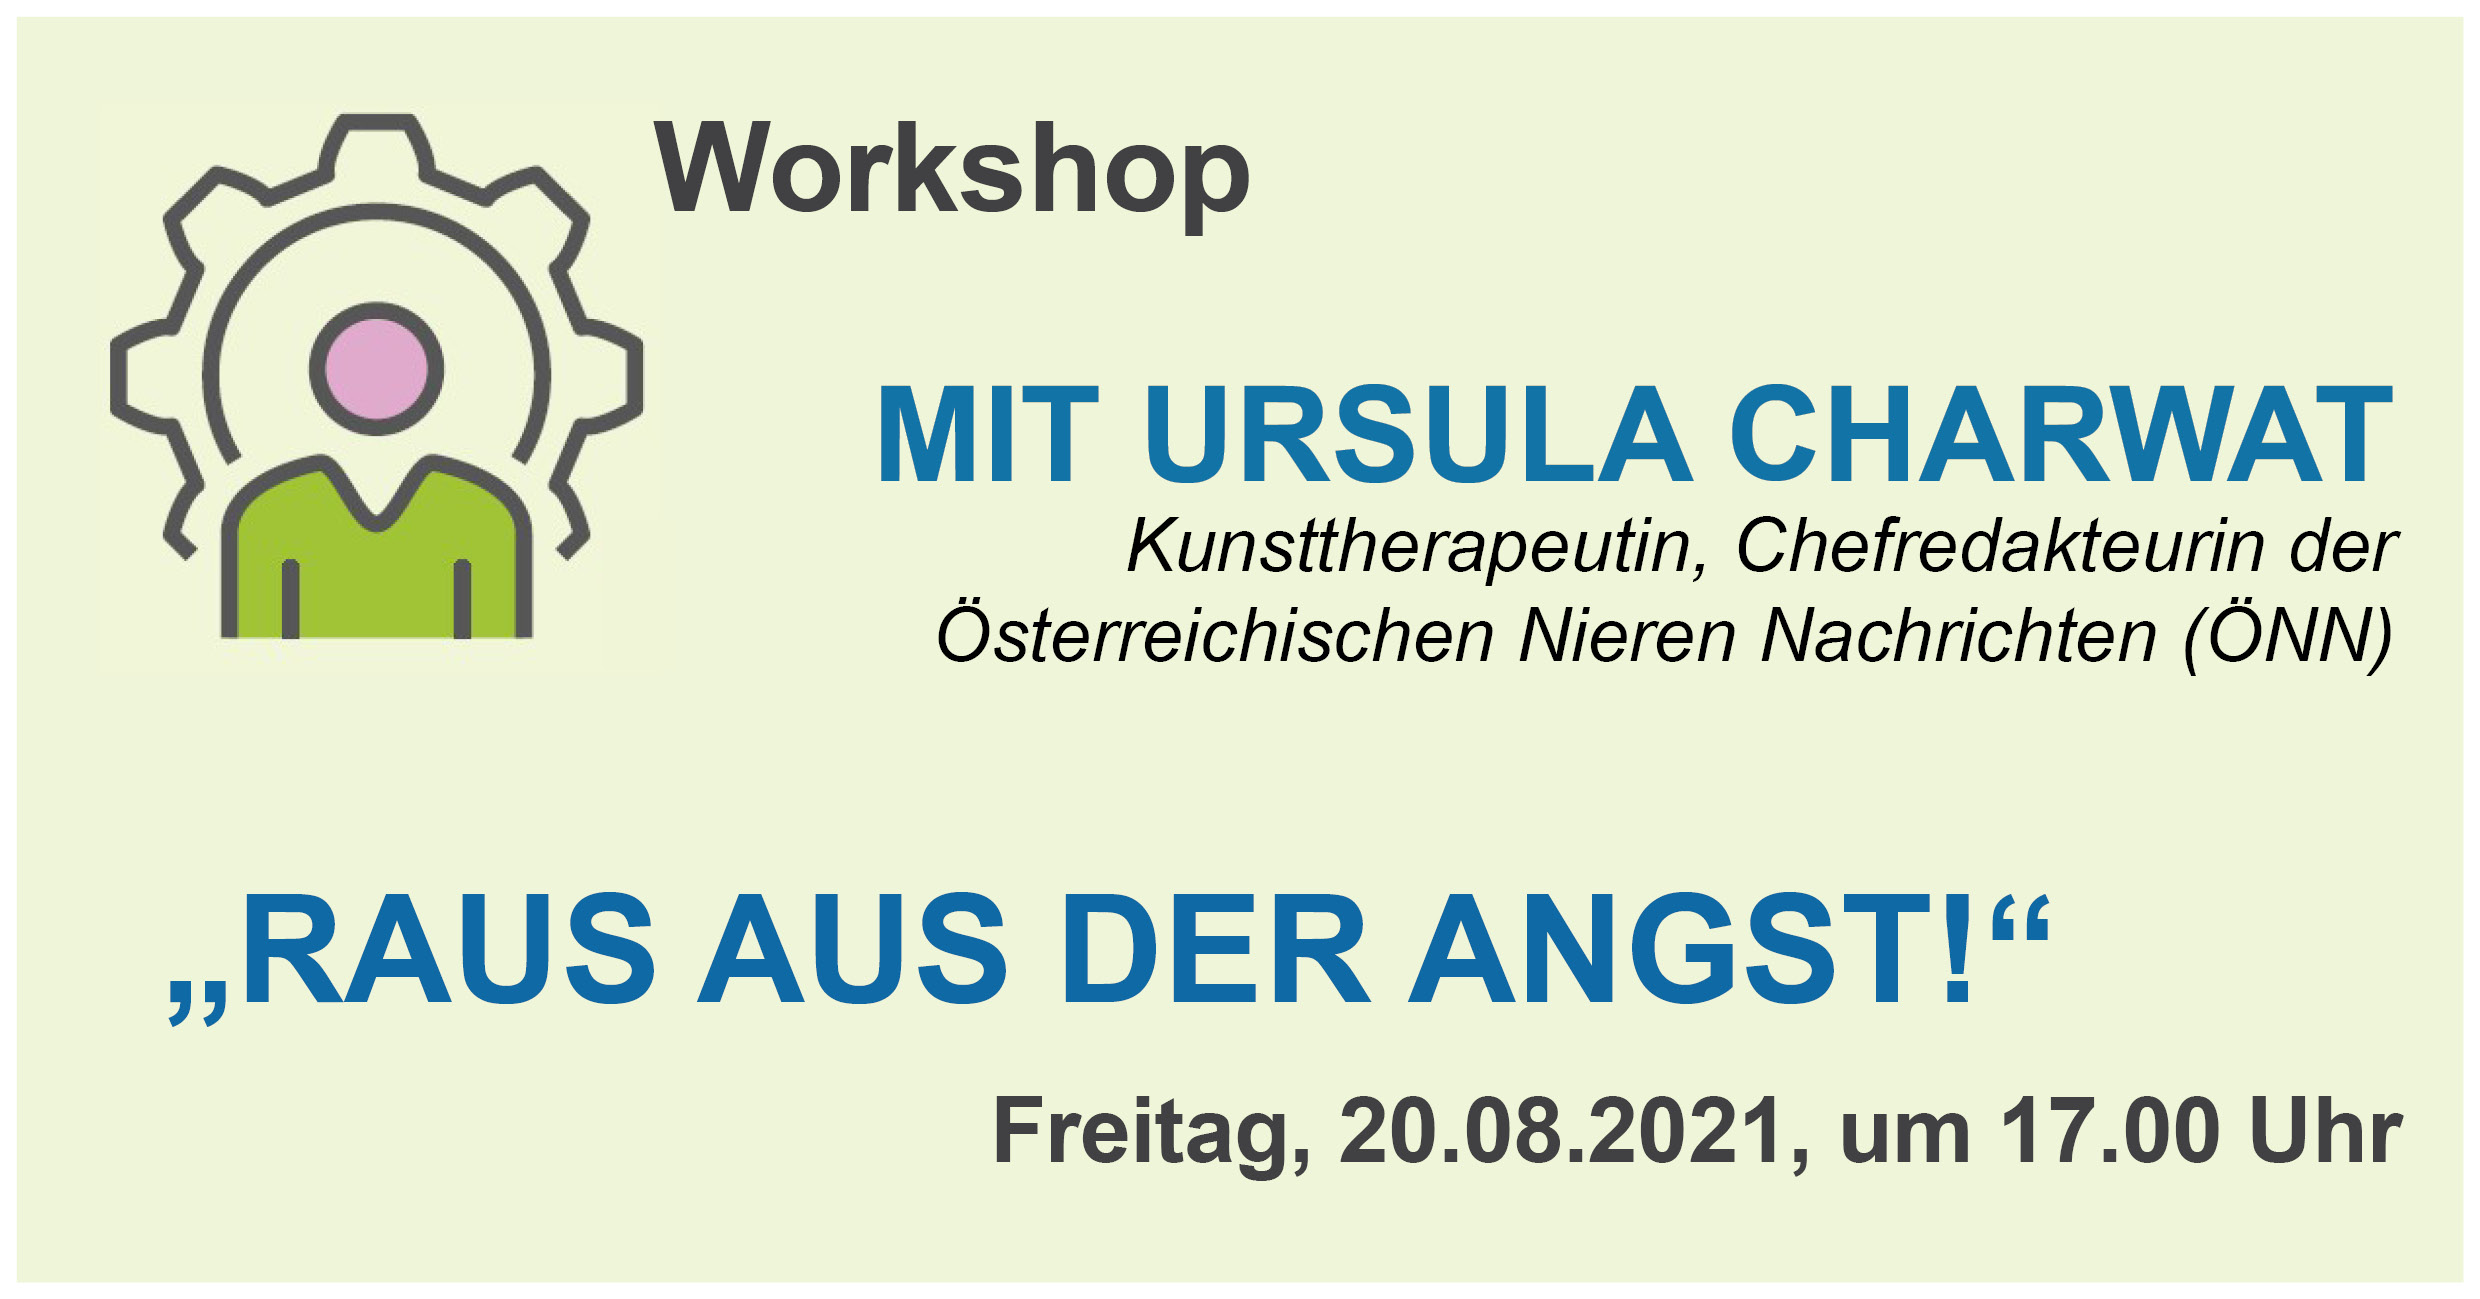 Online Workshop "Raus aus der Angst!" mit Ursula Charwat